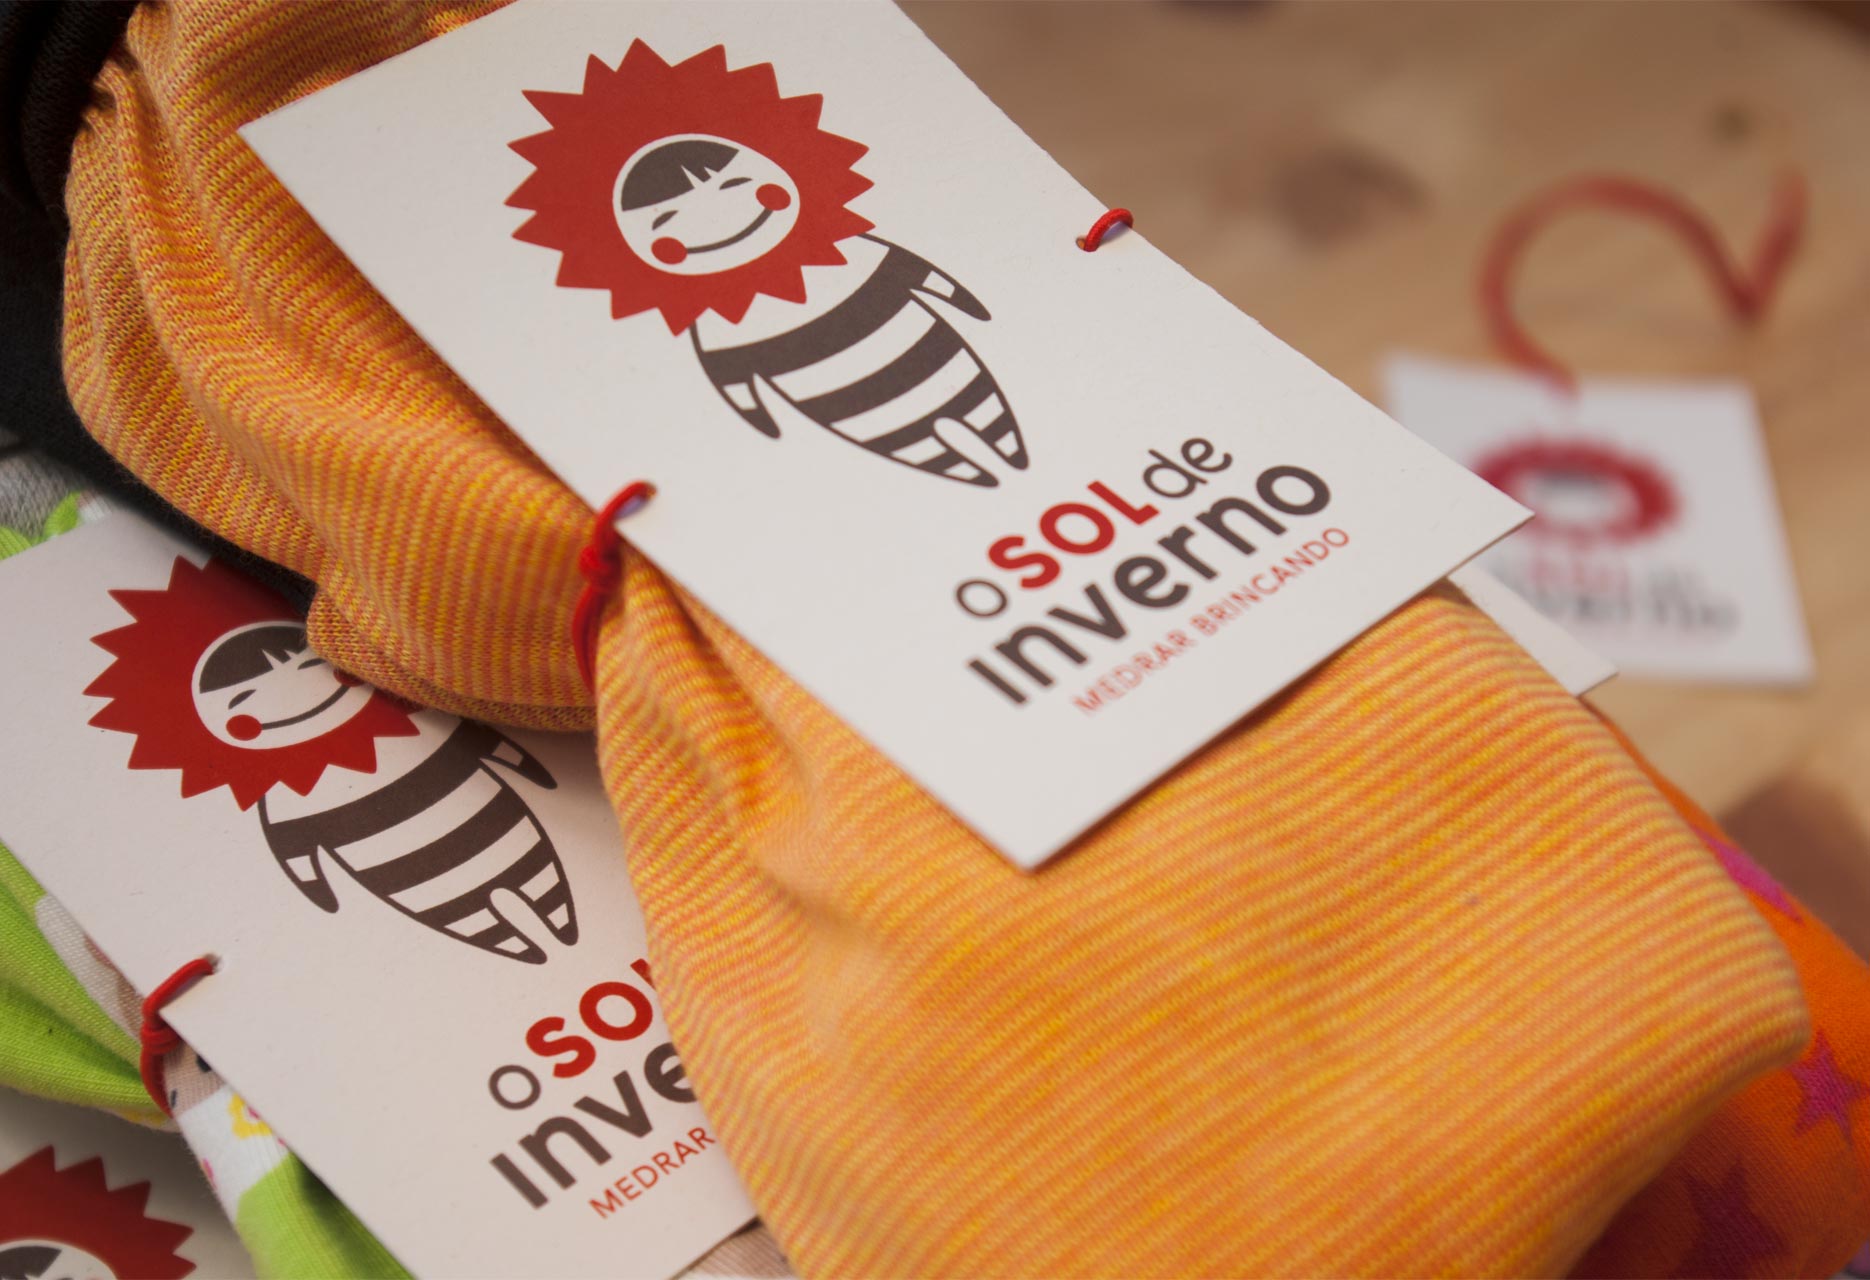 Diseño de marca infantil artesana O sol de inverno - diseño web / identidad corporativa / ilustración / packaging - 2015